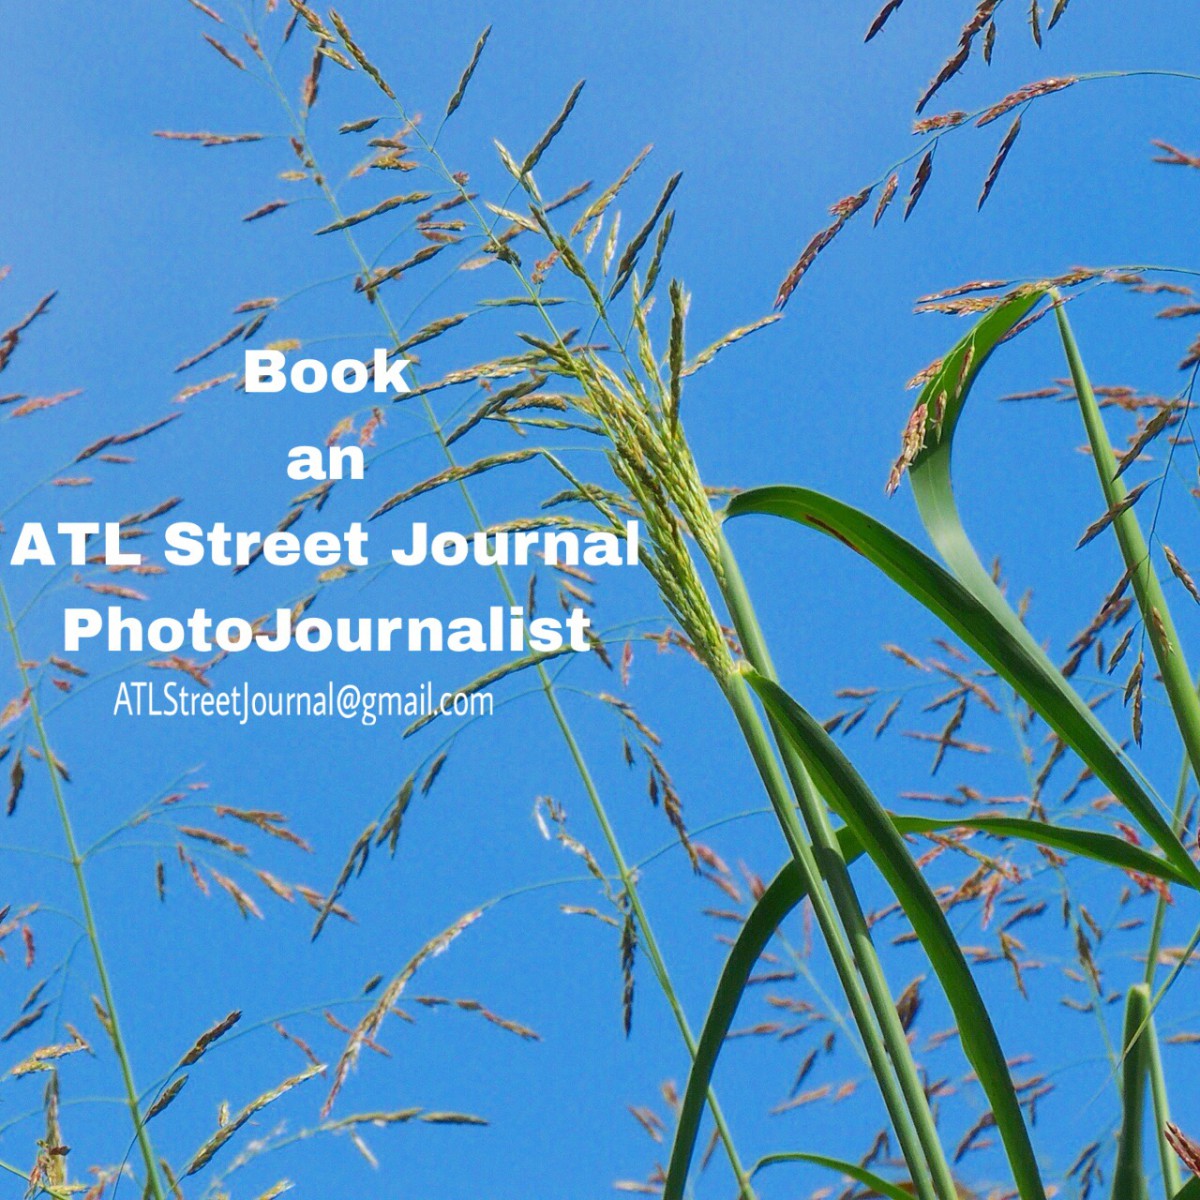 Book an ATL Street Journal Photojournalist